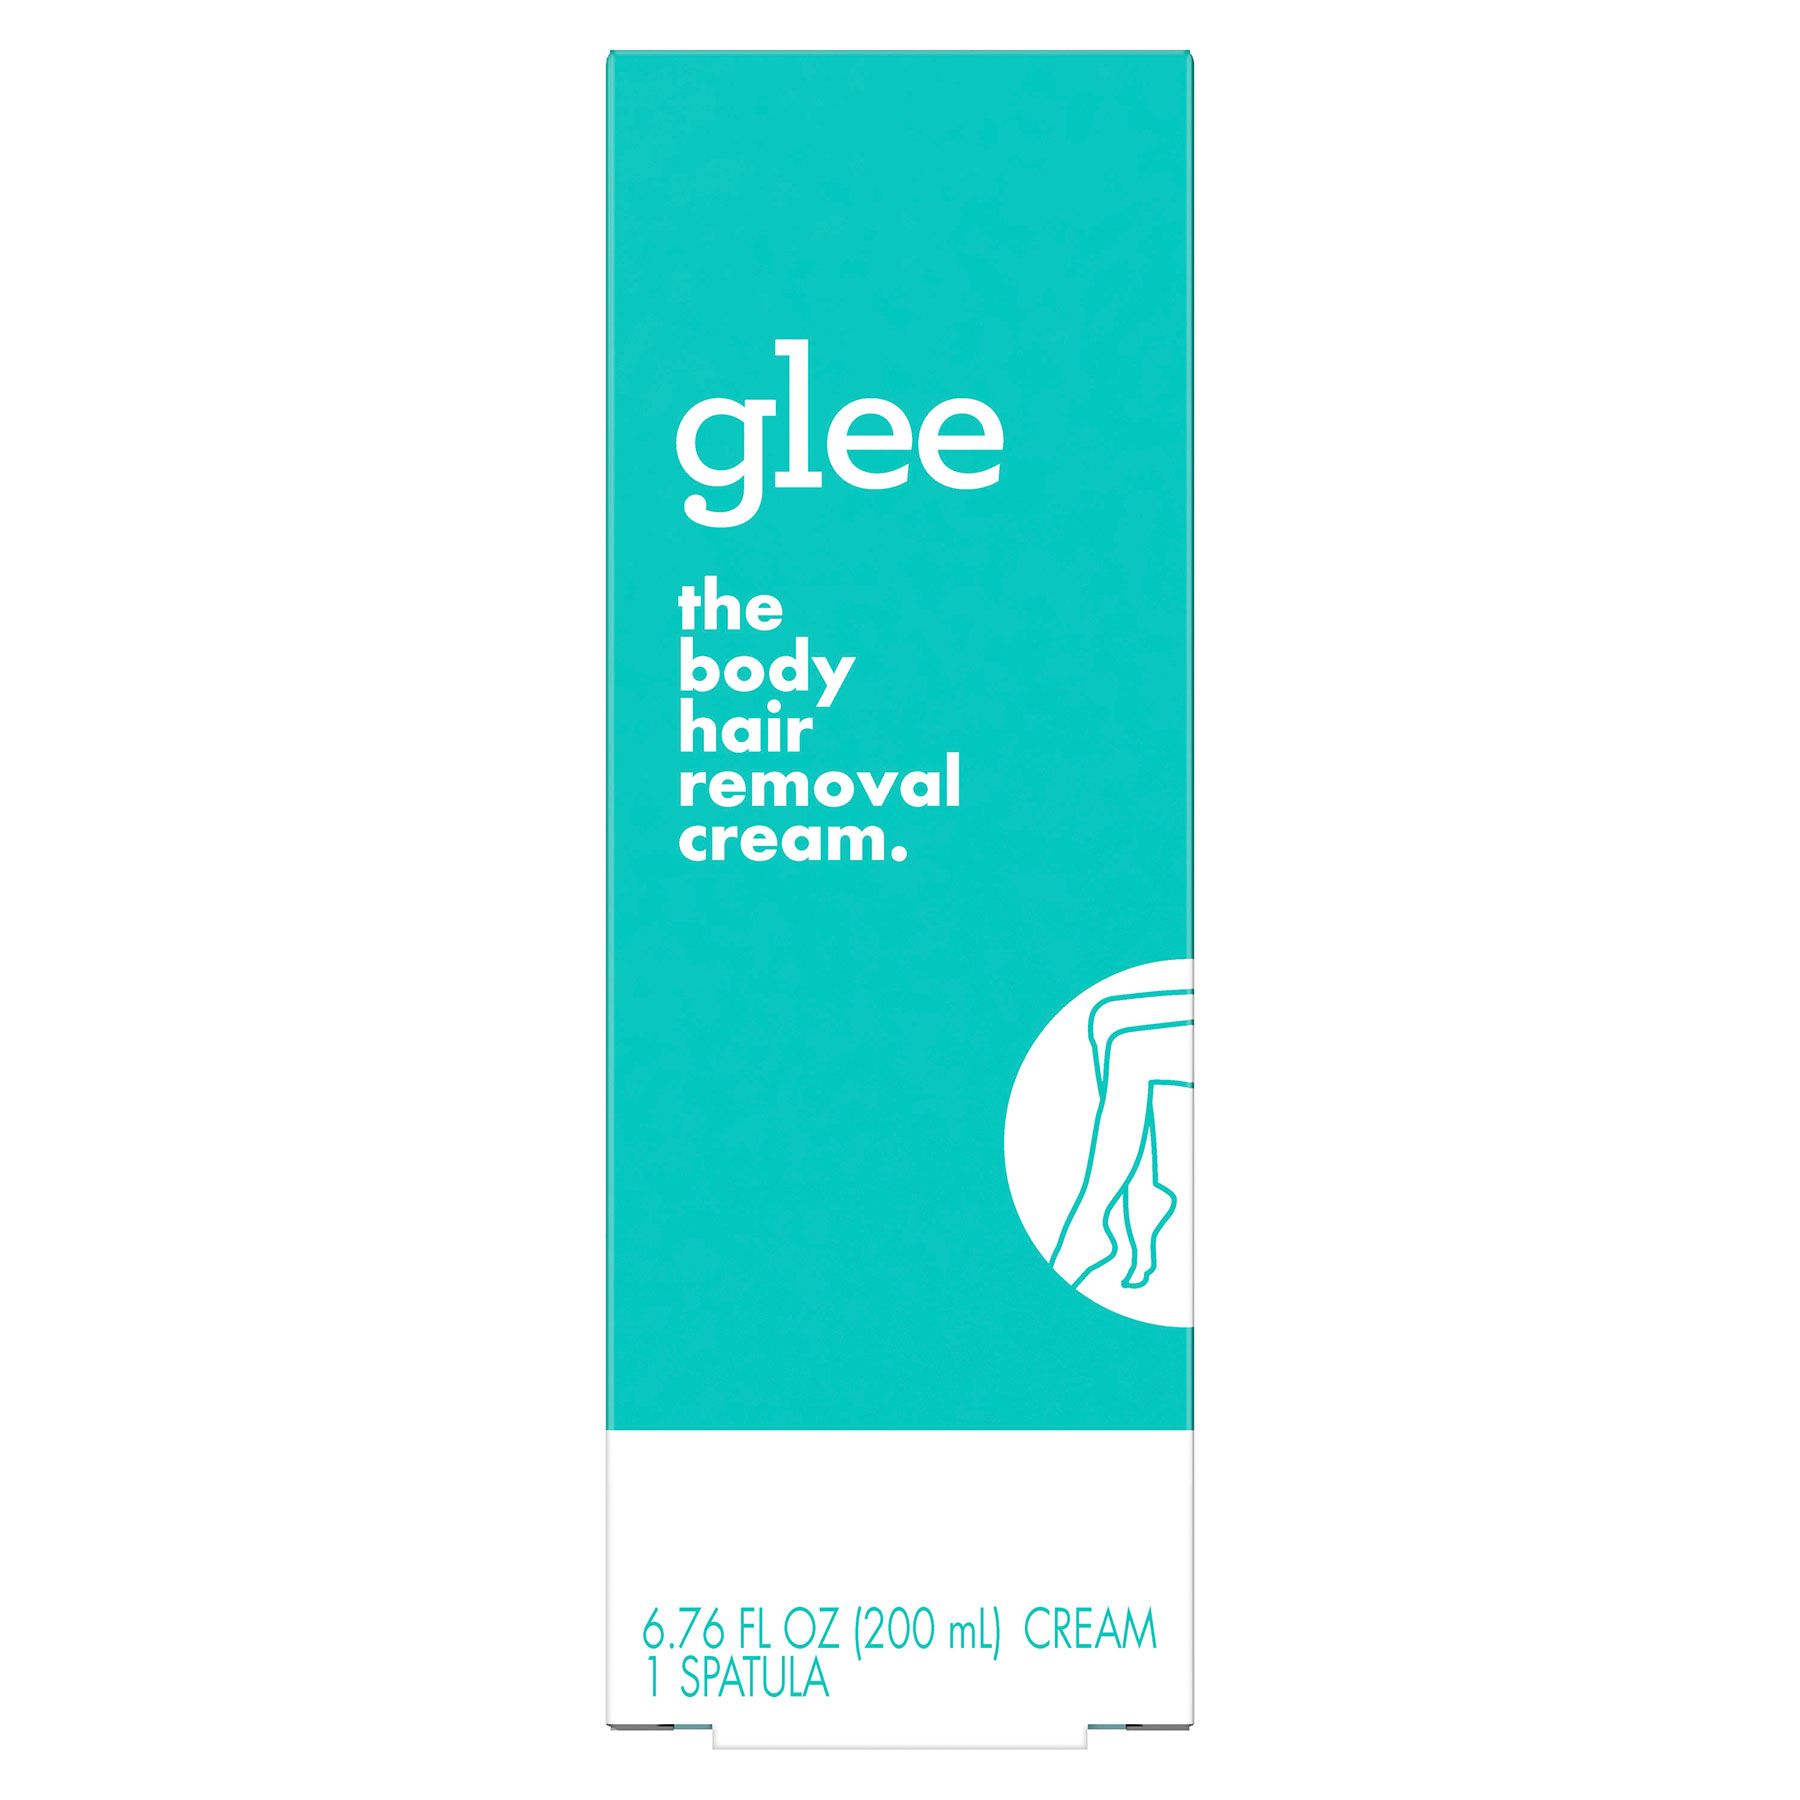 המוצרים הטובים ביותר להסרת שיער: Glee The Cream להסרת שיער בגוף